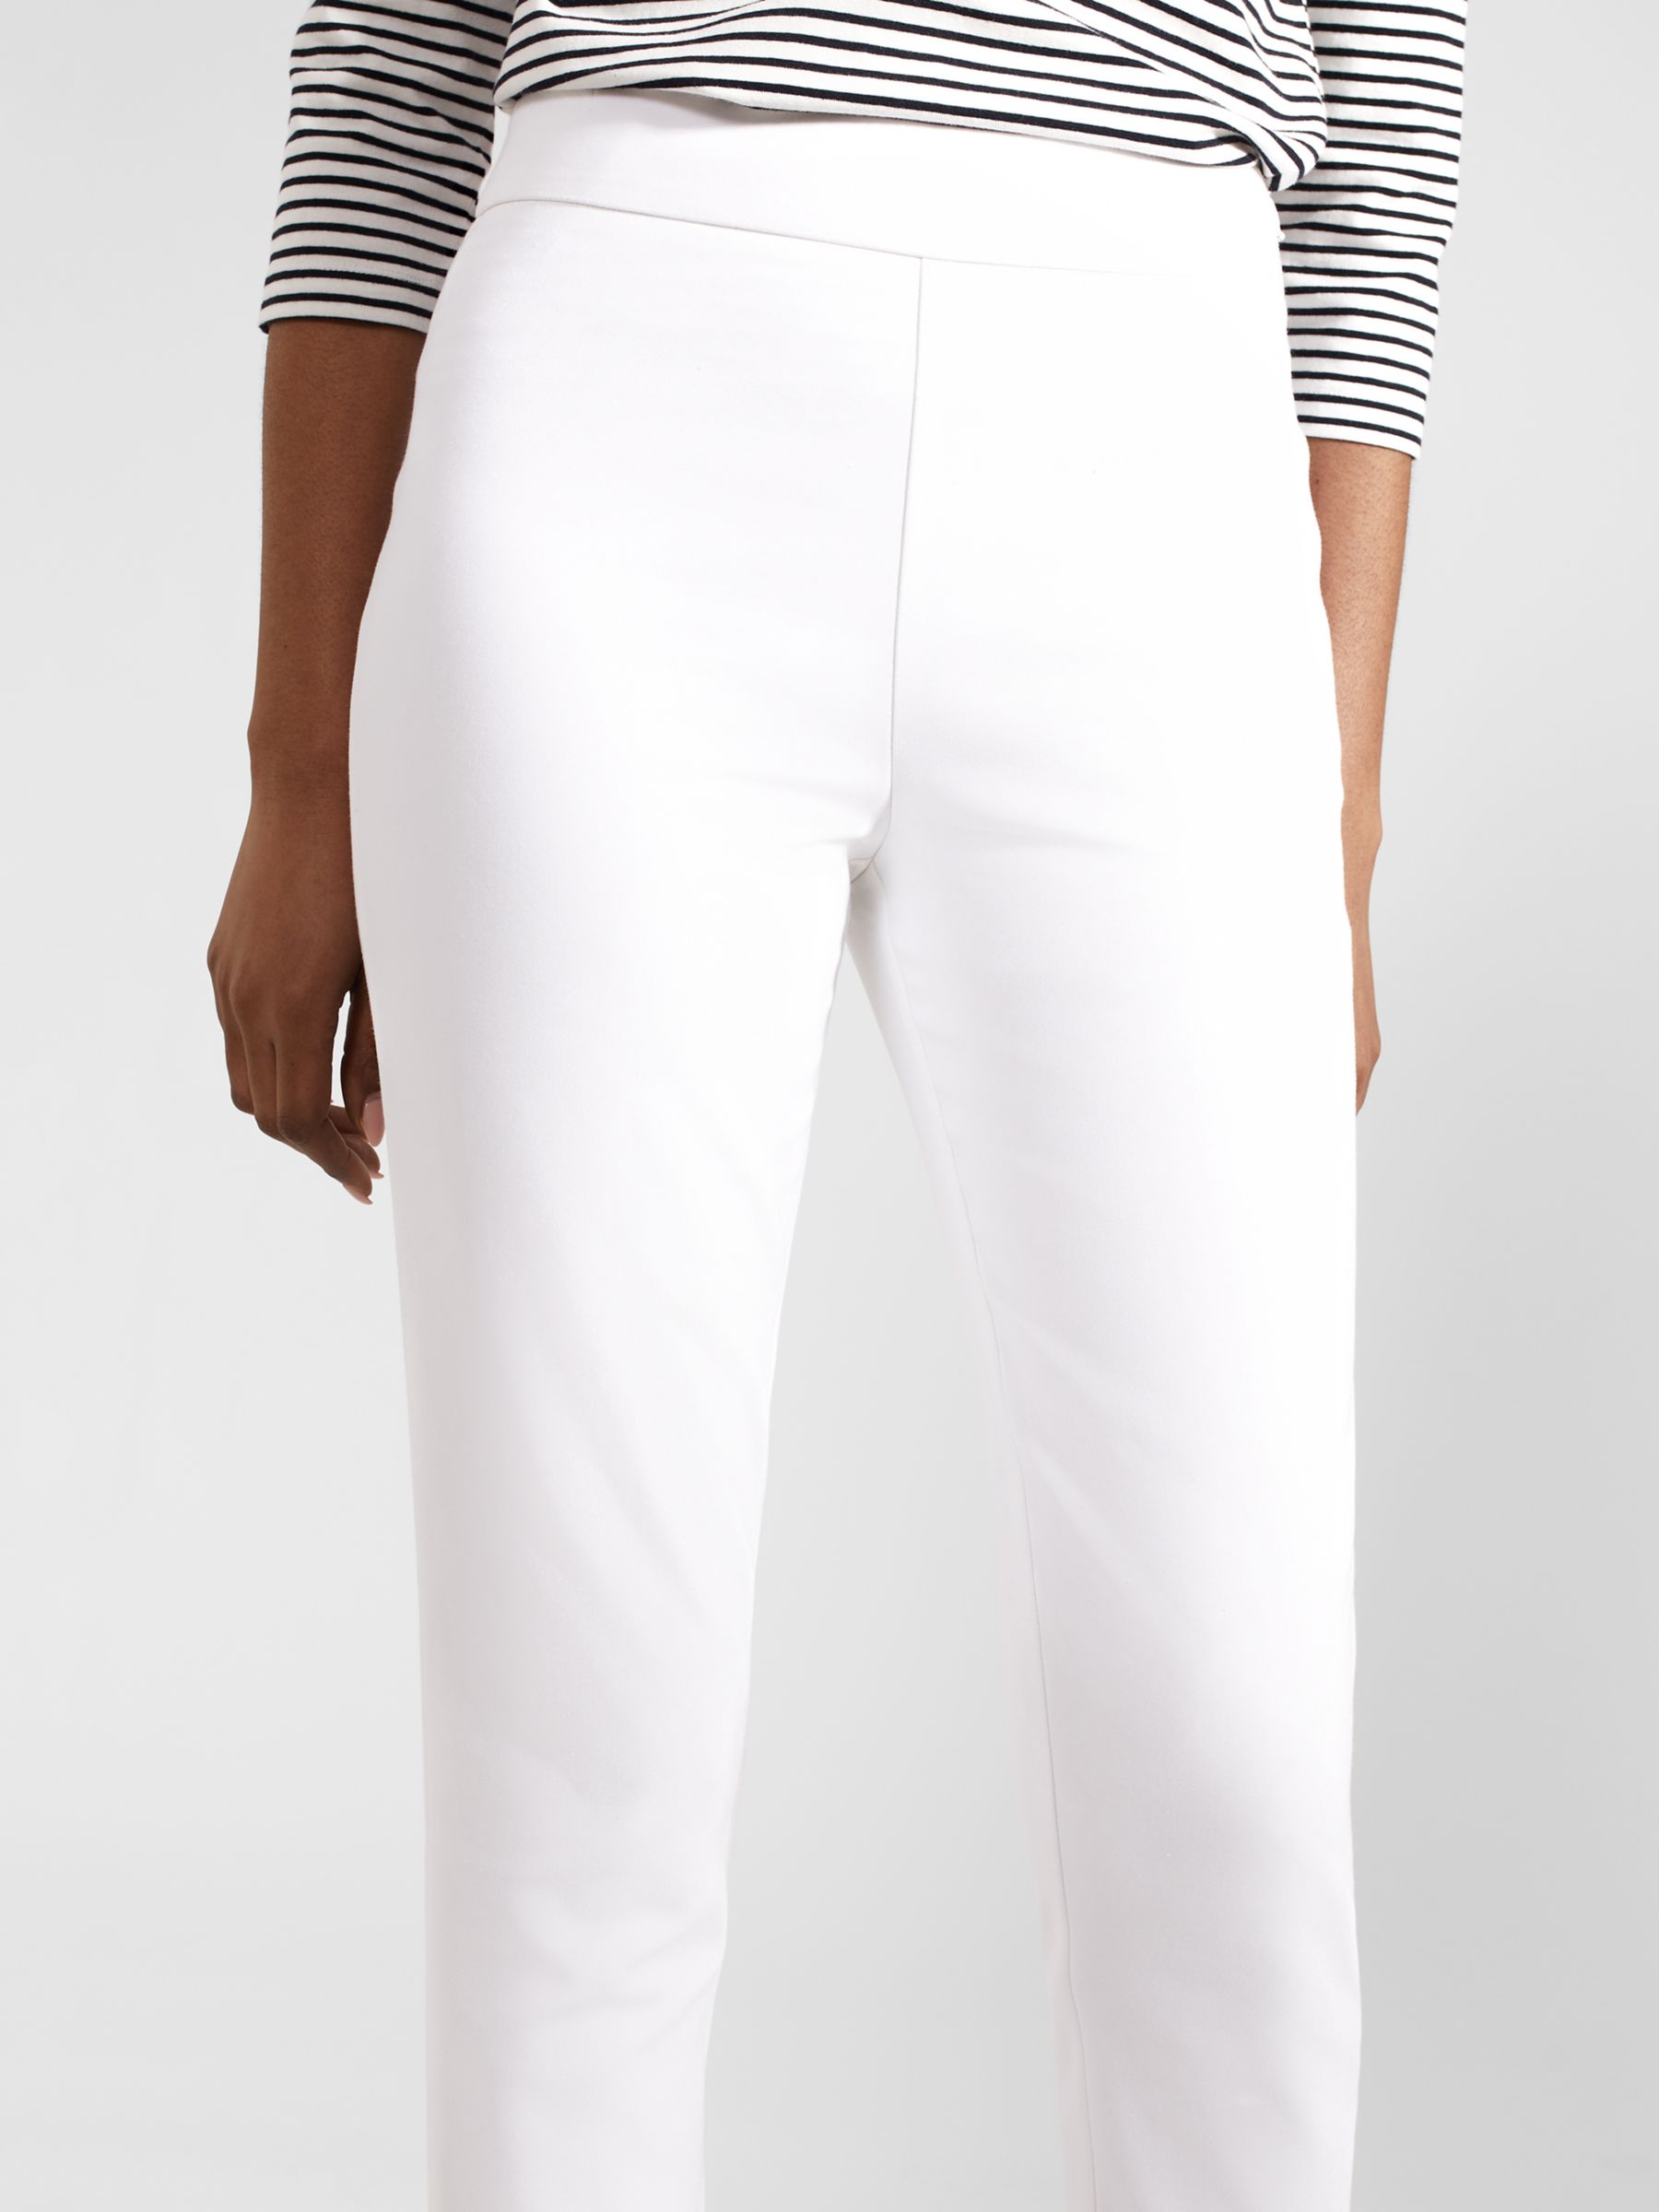 Buy Hobbs Giselle Skinny Fit Capri Trousers, White Online at johnlewis.com